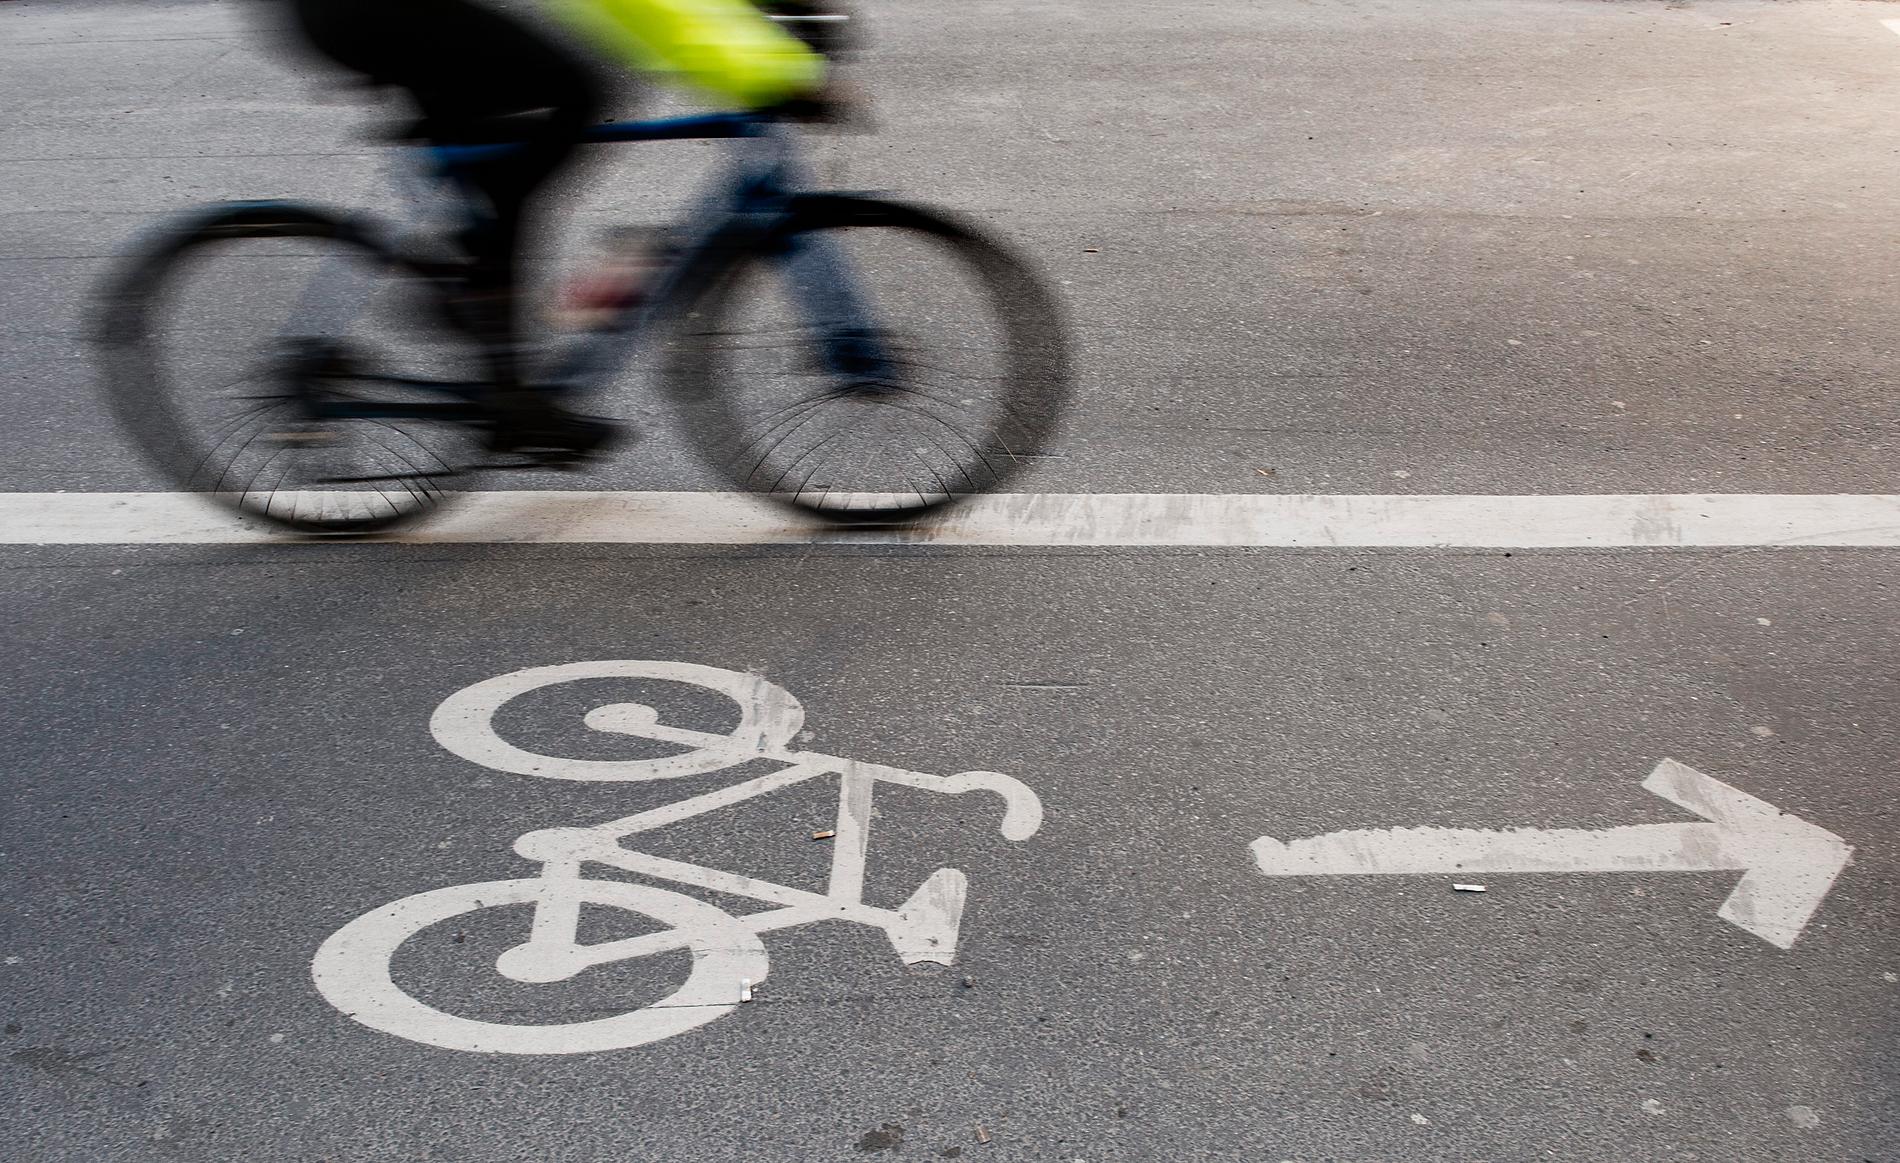 En cykelbana blir enkelriktad endast om skyltar anger det. Märkningen i asfalten pekar bara ut "lämplig" färdriktning.